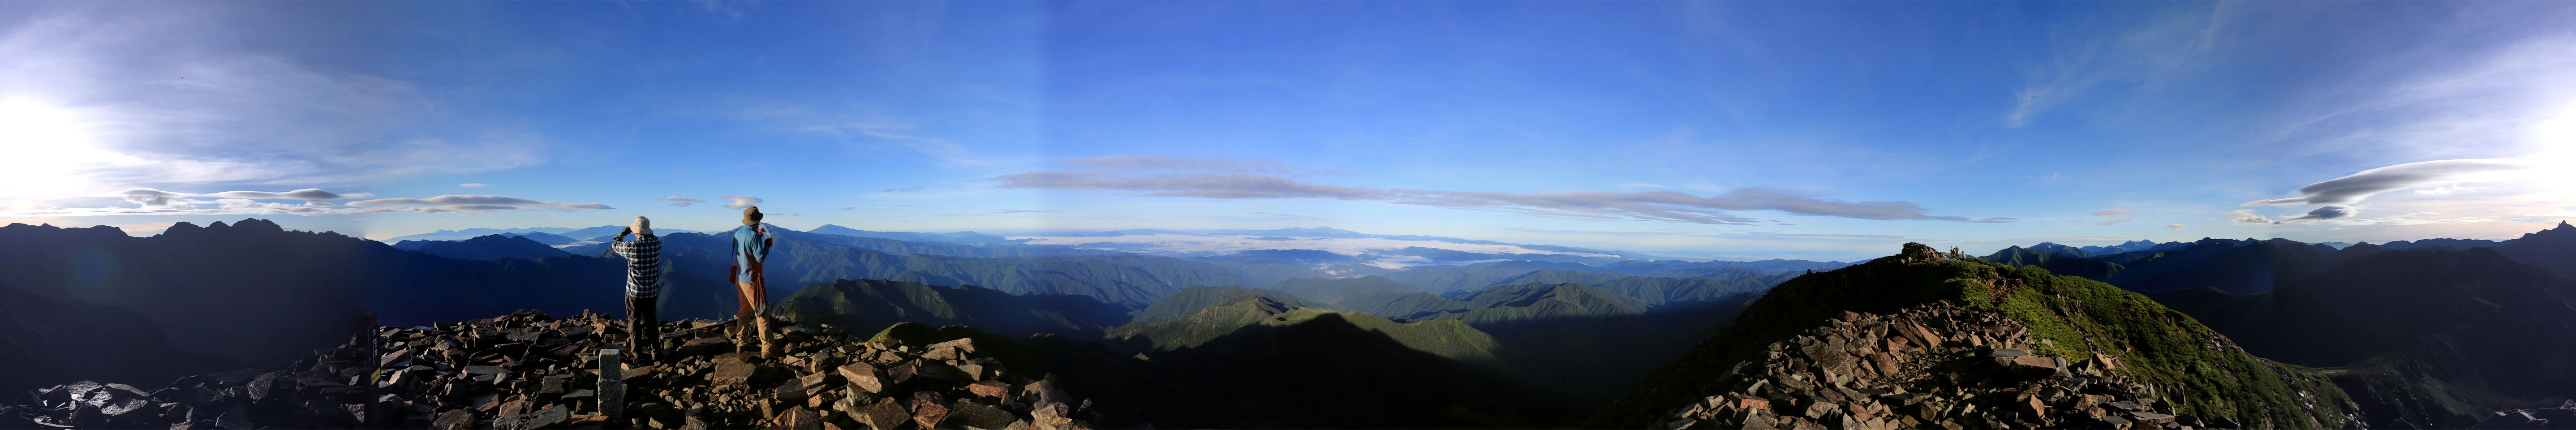 笠ヶ岳からのパノラマ写真